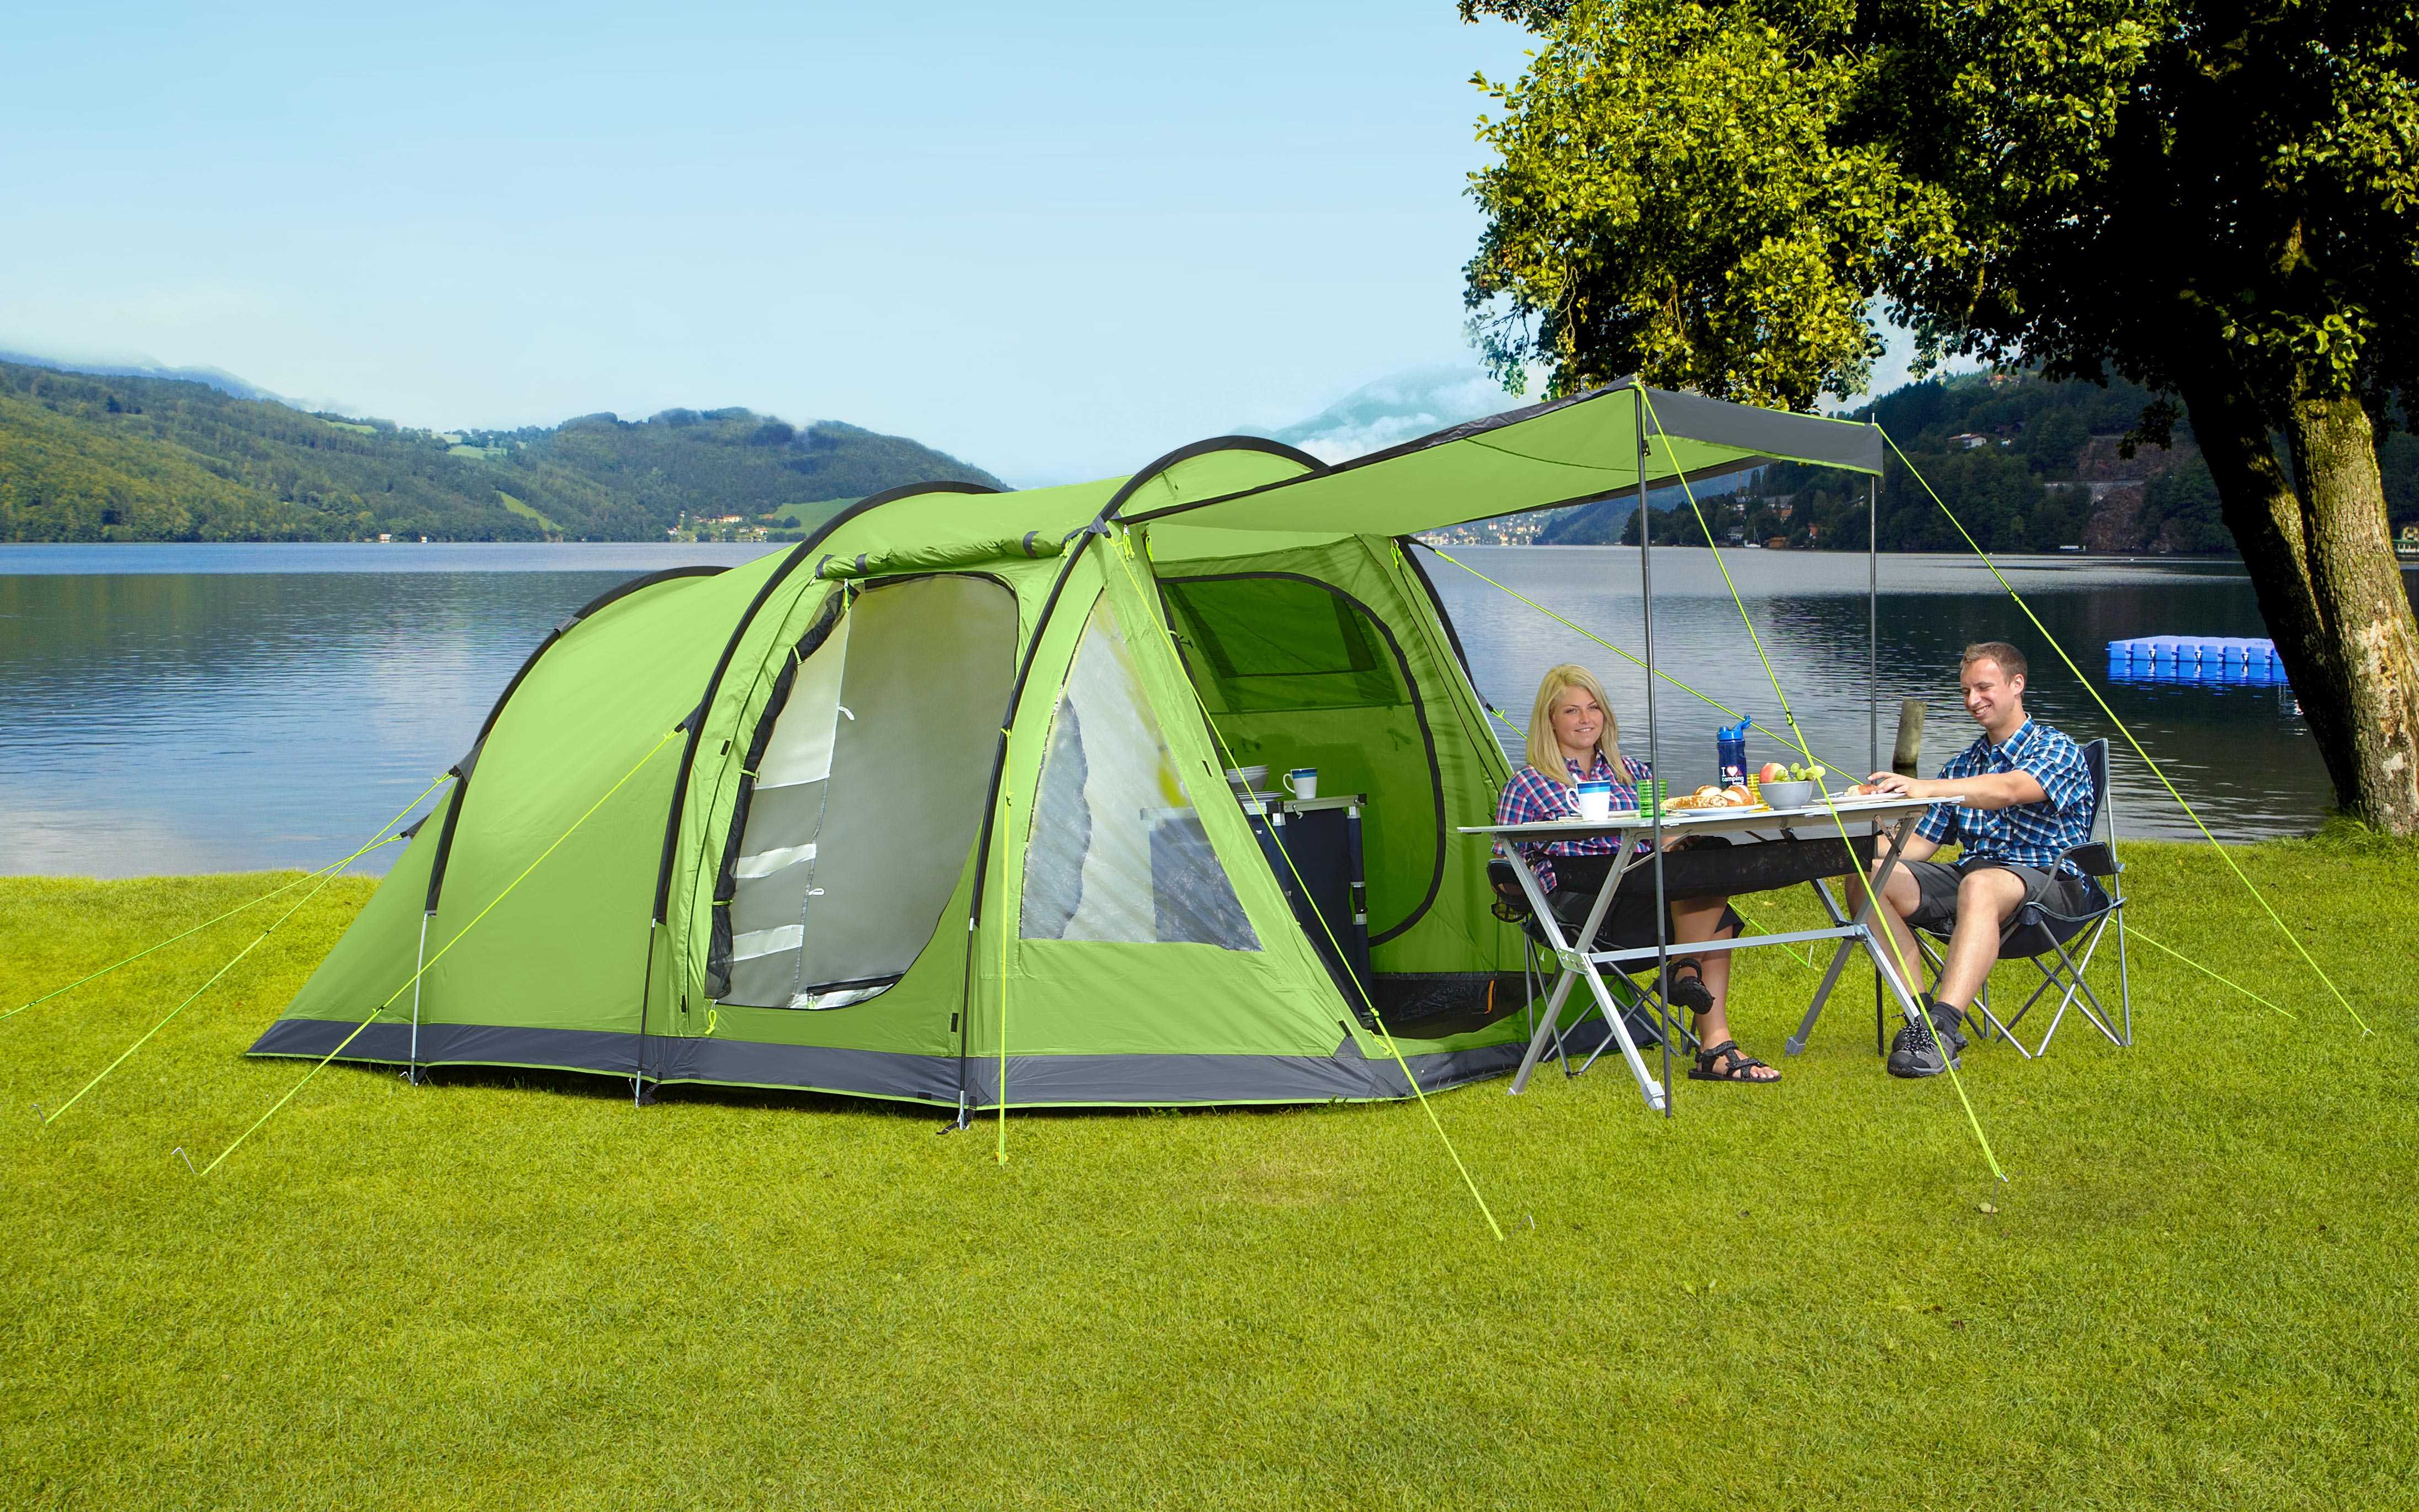 Camping platform. Палатки Fritz-Berger. Бергер 4 палатка. Палатки для кемпинга. Туризм с палатками.